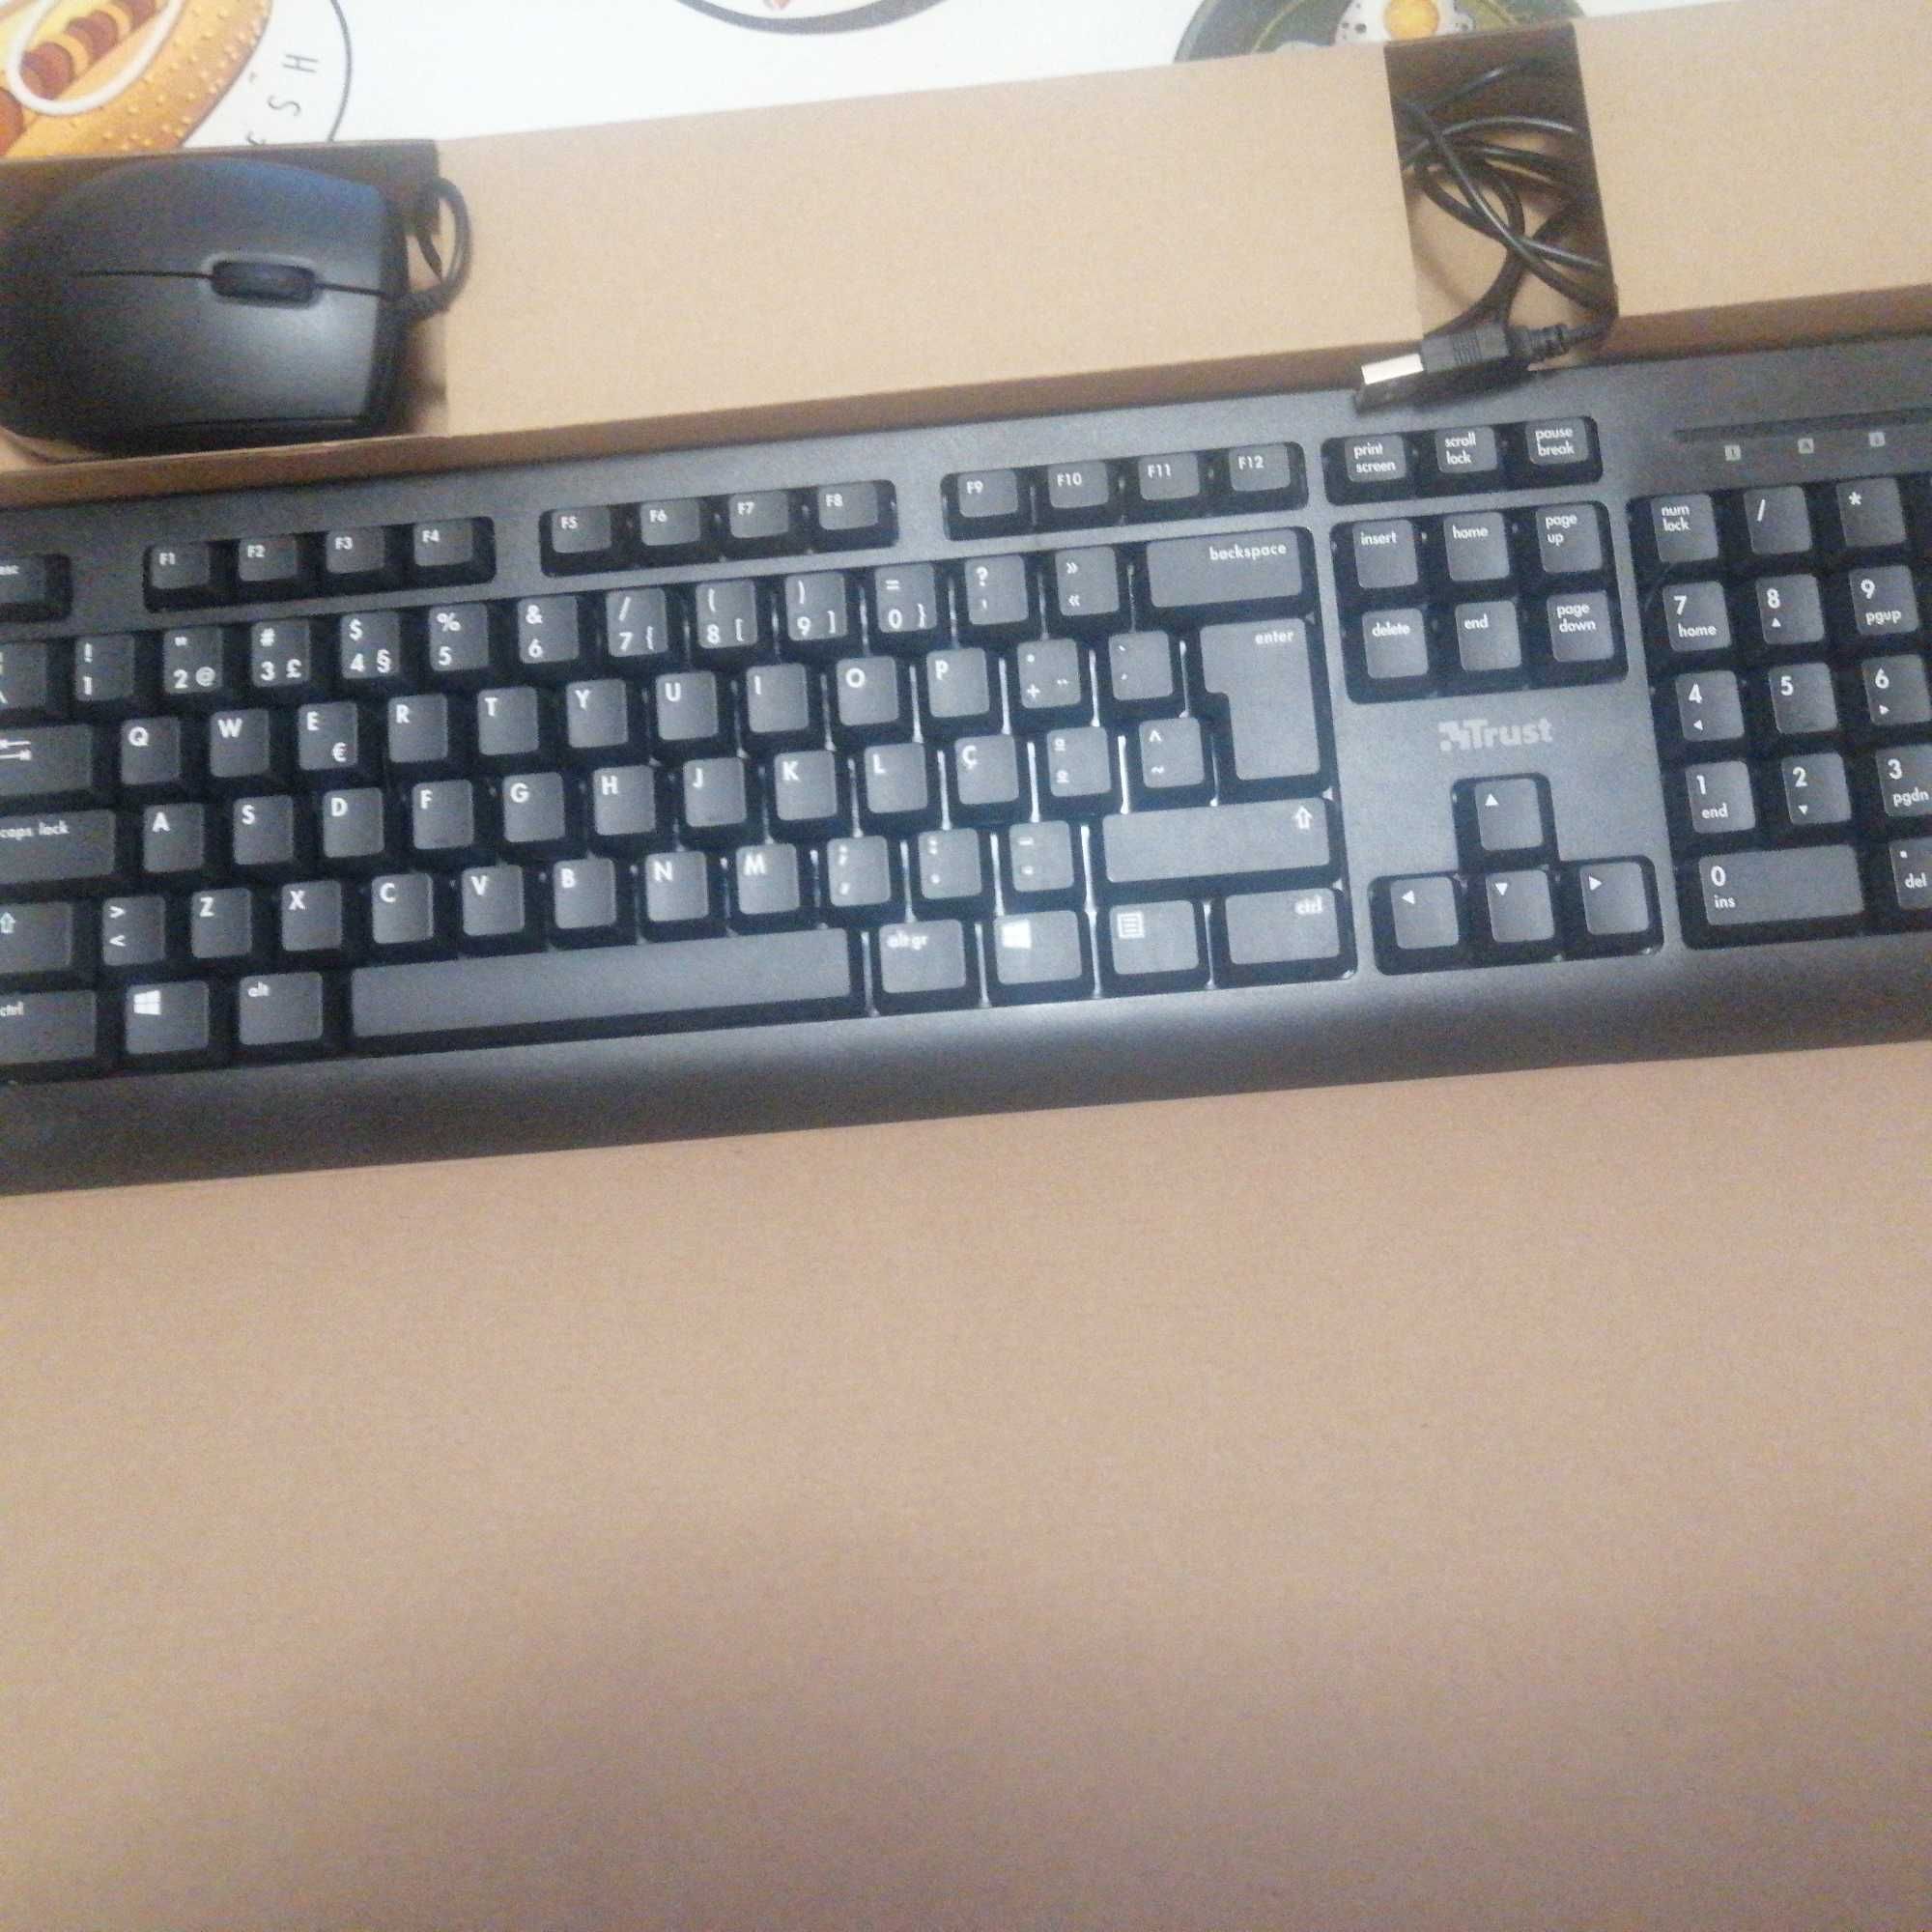 Keyboard e mouse nunca utilizados